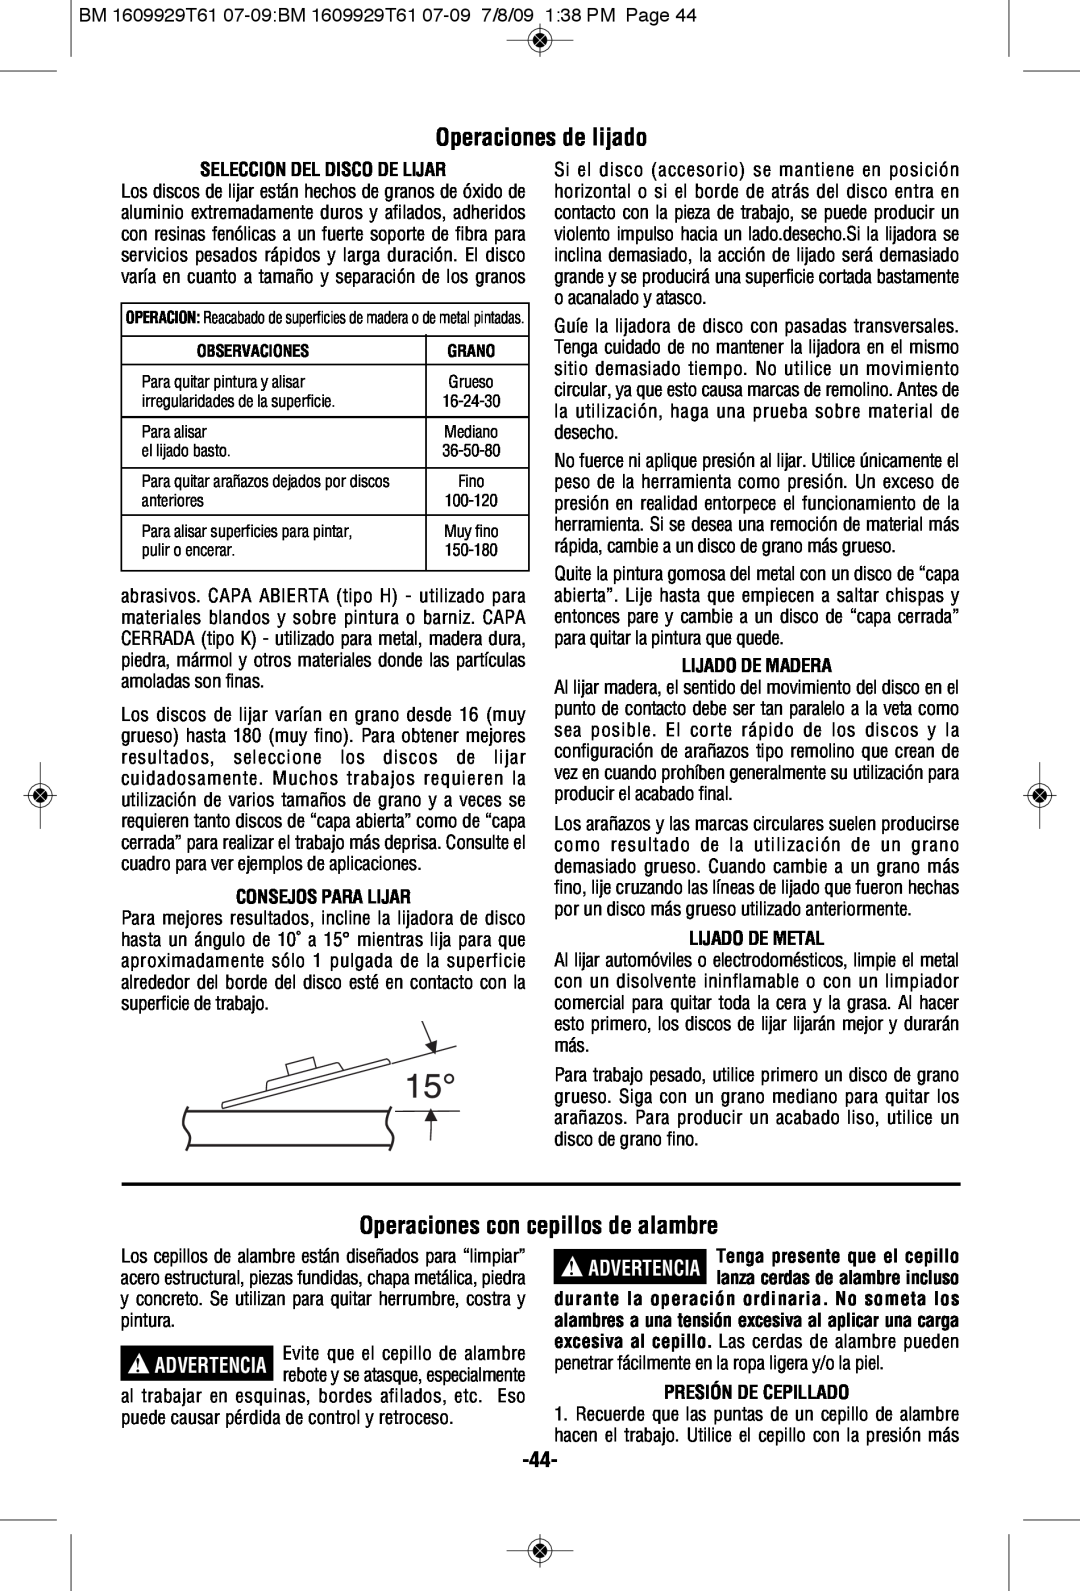 Bosch Power Tools 1994-6, 1974-8 Operaciones de lijado, Operaciones con cepillos de alambre, Seleccion Del Disco De Lijar 